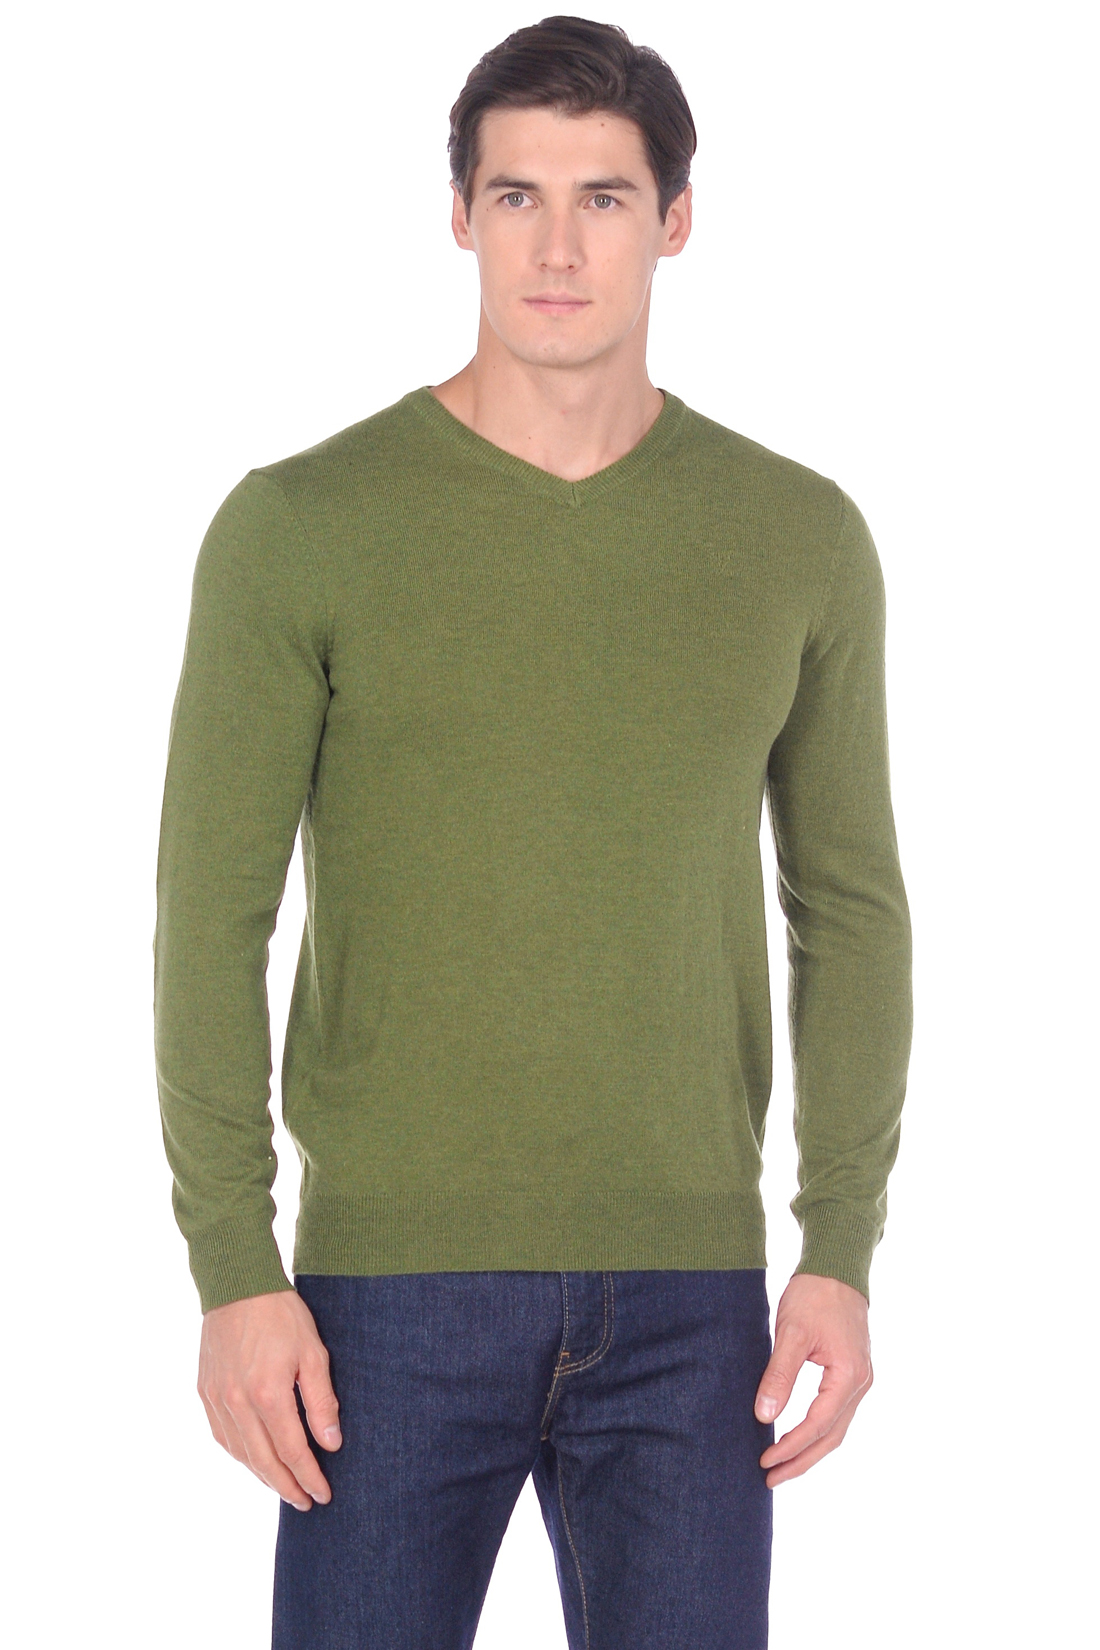 Базовый пуловер с шерстью (арт. baon B639702), размер XXL, цвет vine melange#зеленый